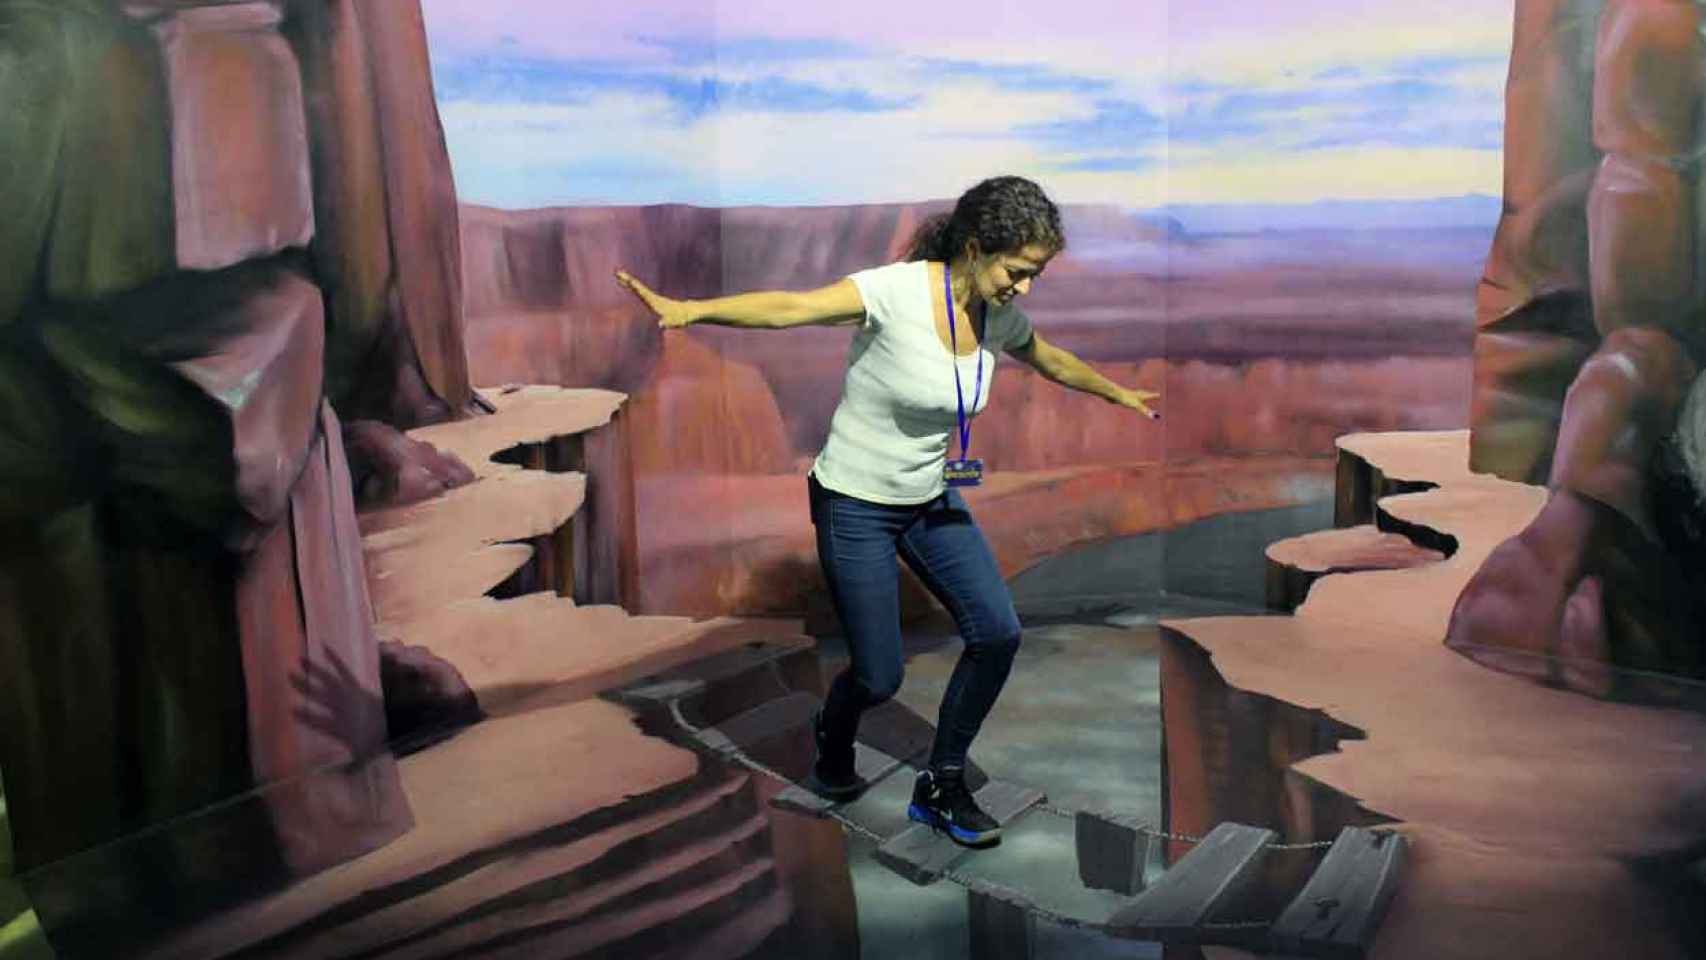 En el Museo de las Ilusiones, cruzar el Gran Cañón puede resultar arriesgado. / CR.